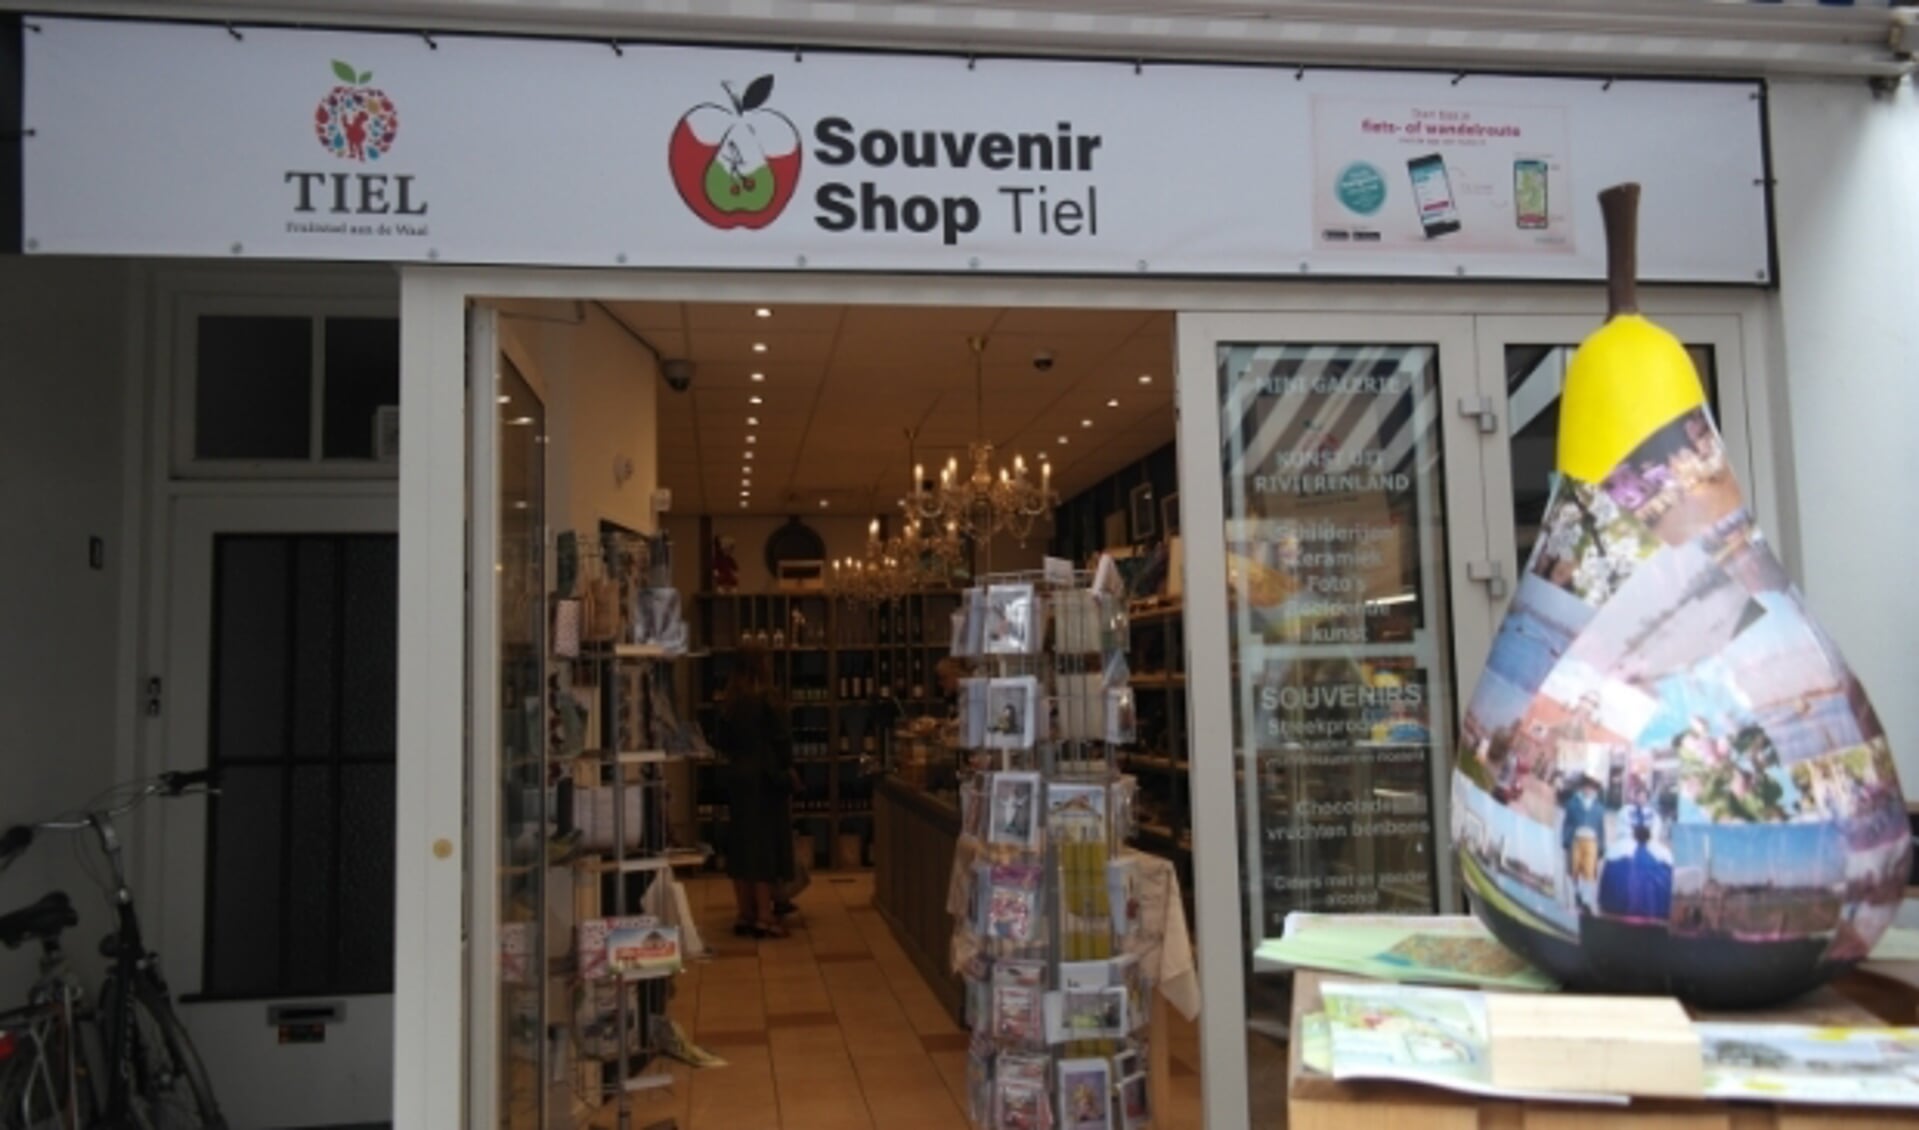 De souvenirshop en de kunstenaarswinkel in de Tielse binnenstad zijn recente voorbeelden van de plannen om leegstaande winkelpanden op te vullen, de gemeente presenteert nu een 3-jarenplan als oplossing.